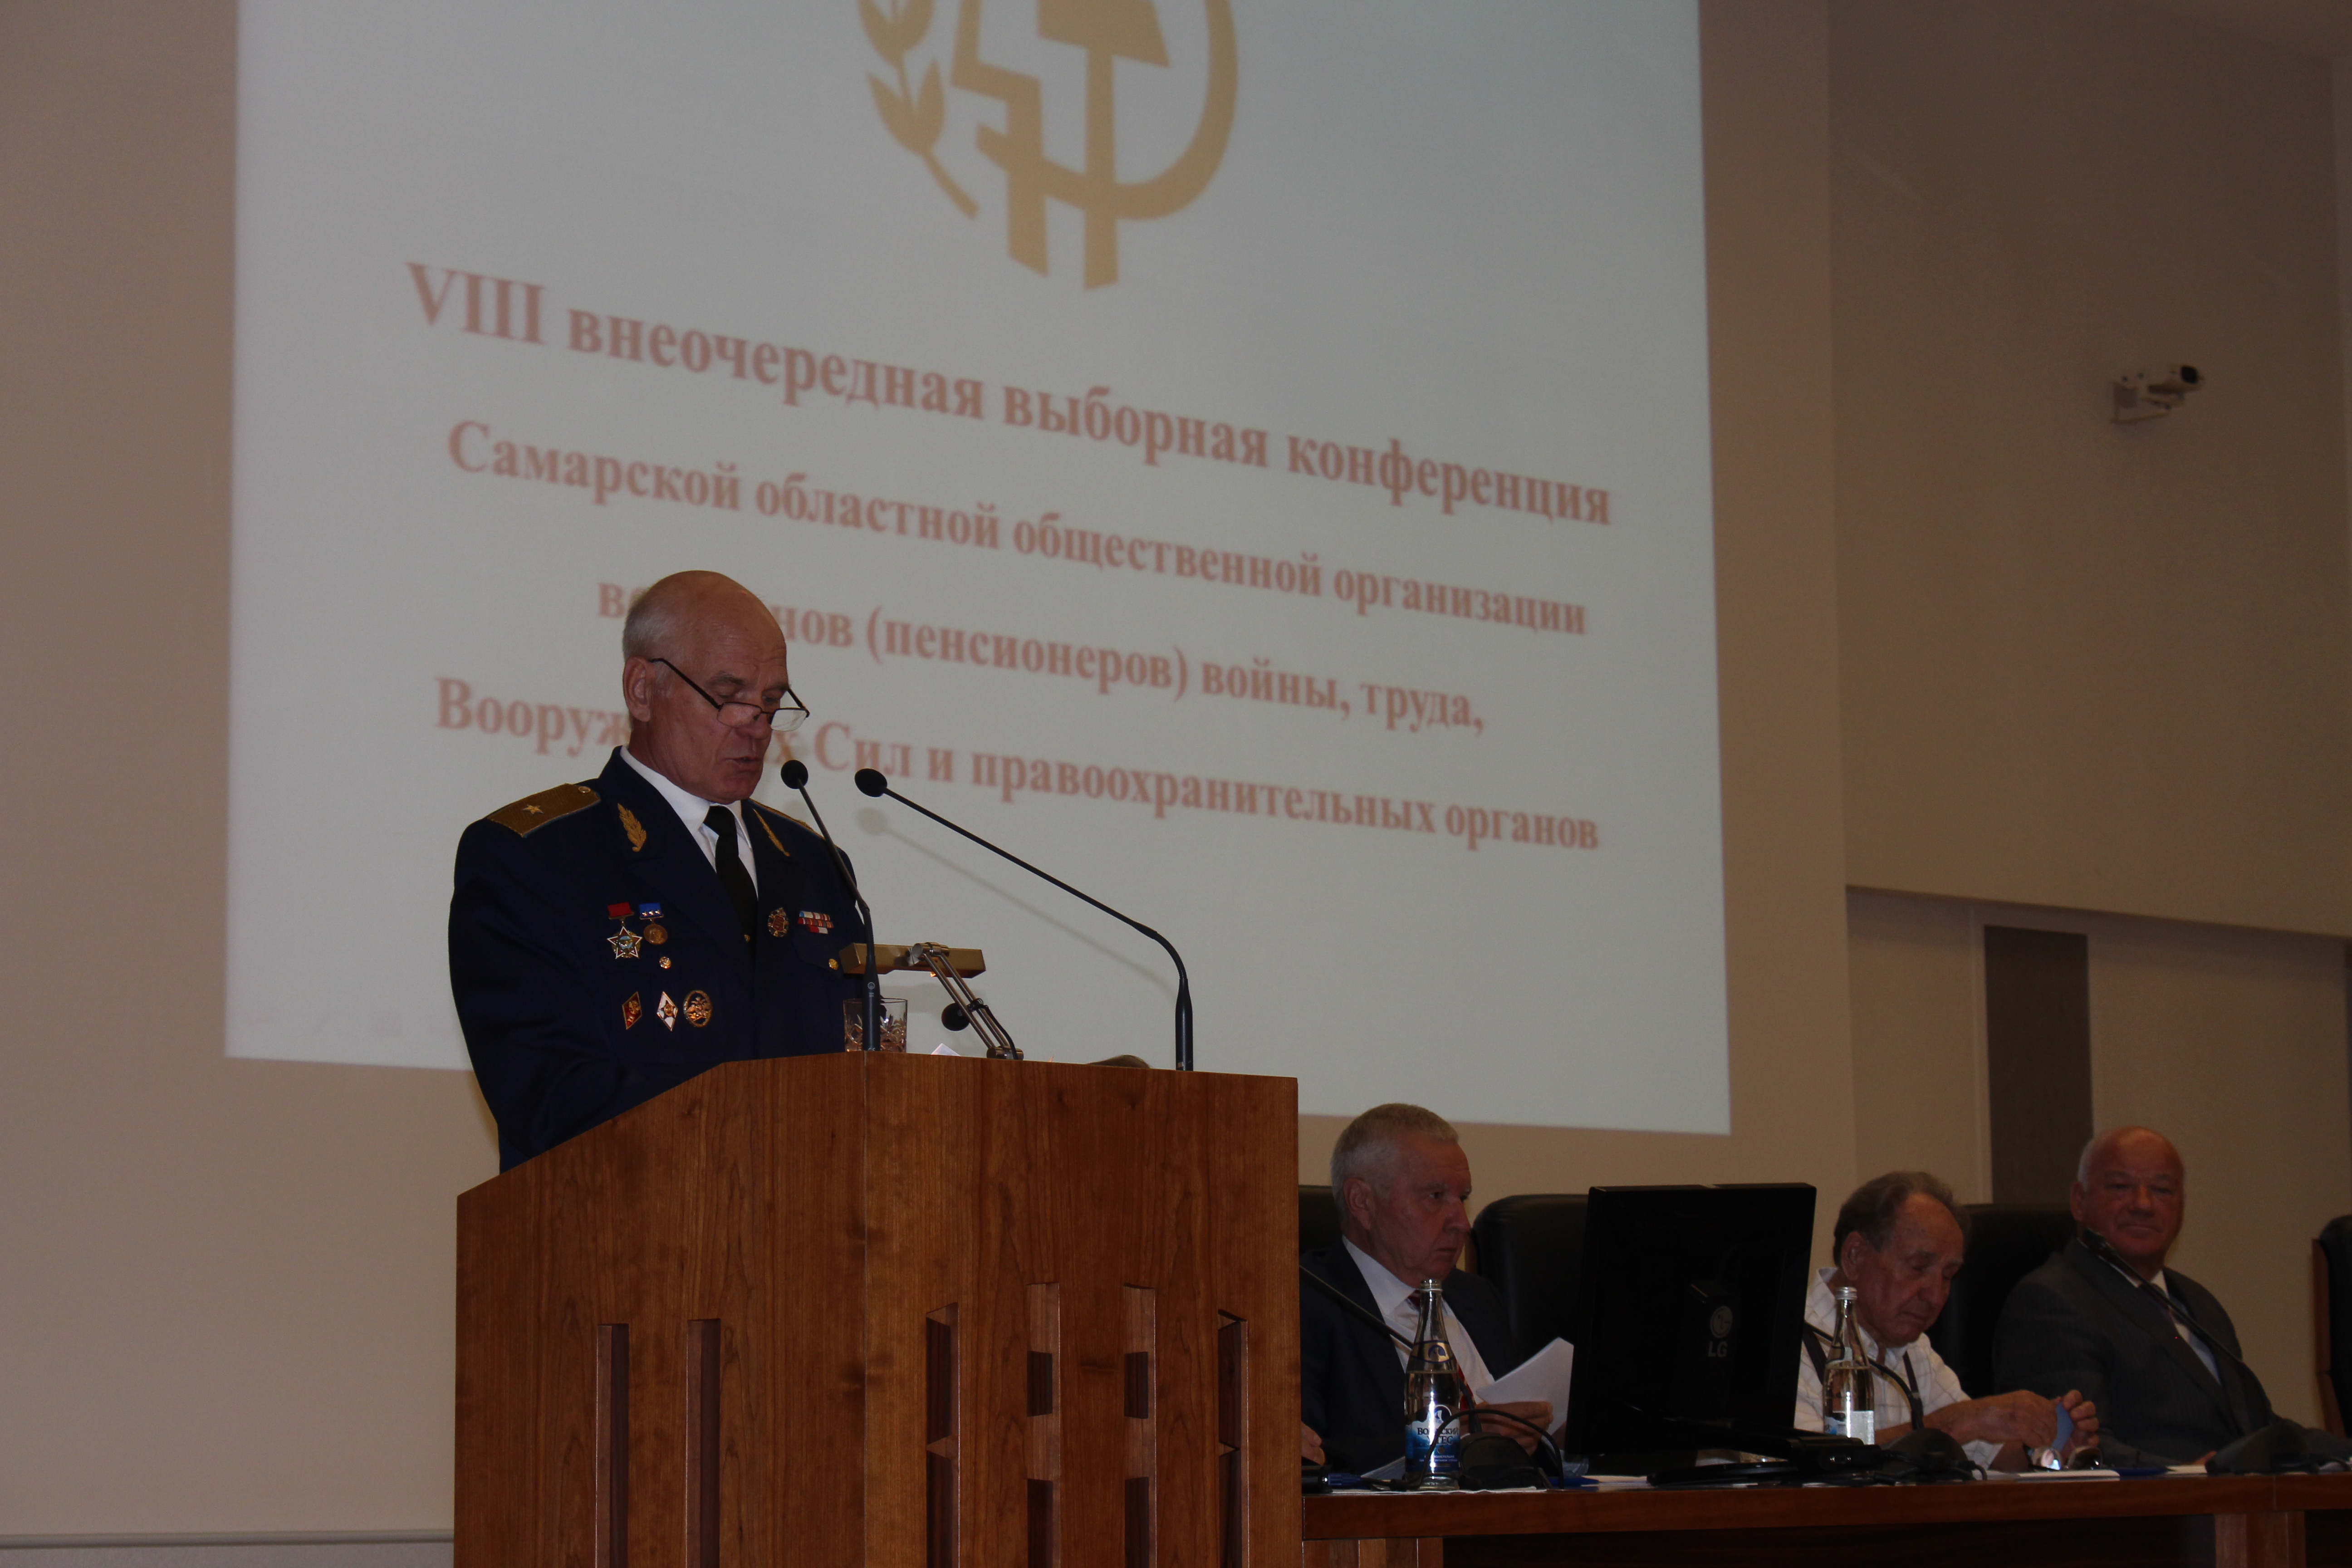 VIII внеочередная конференция Самарской областной общественной организации ветеранов (пенсионеров) войны, труда, Вооруженных сил и правоохранительных органов